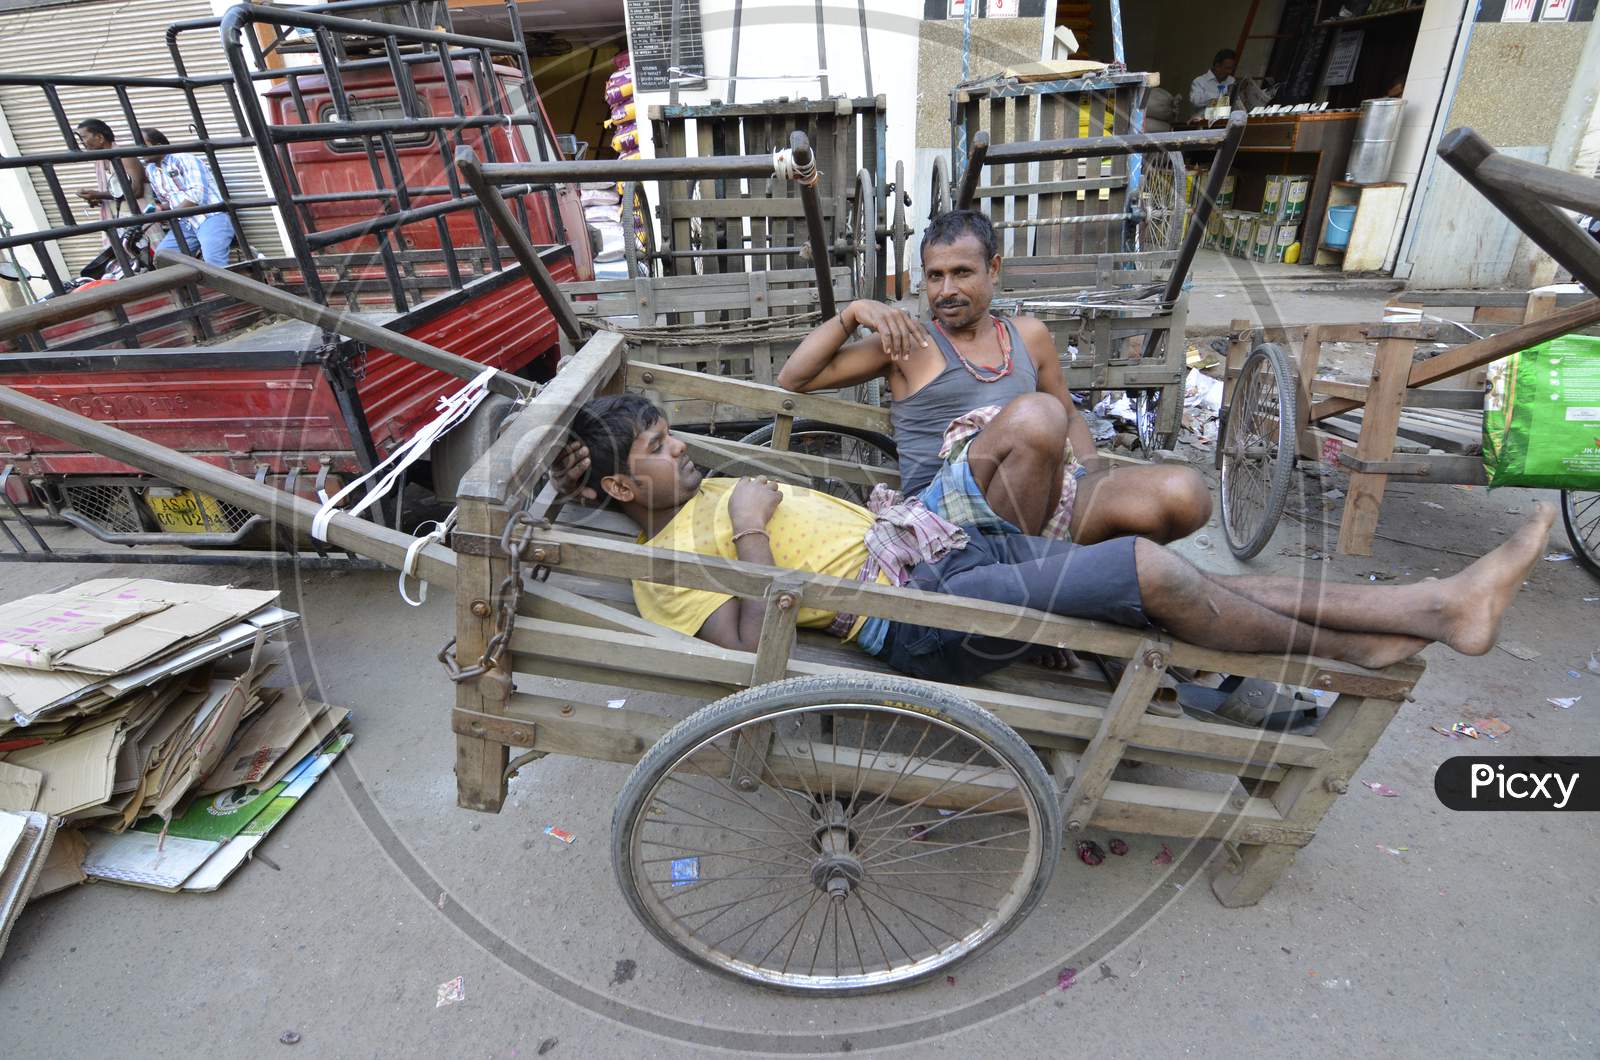 Cart Pullers Taking Rest On Carts in Guwahati Fancy Bazaar , Assam